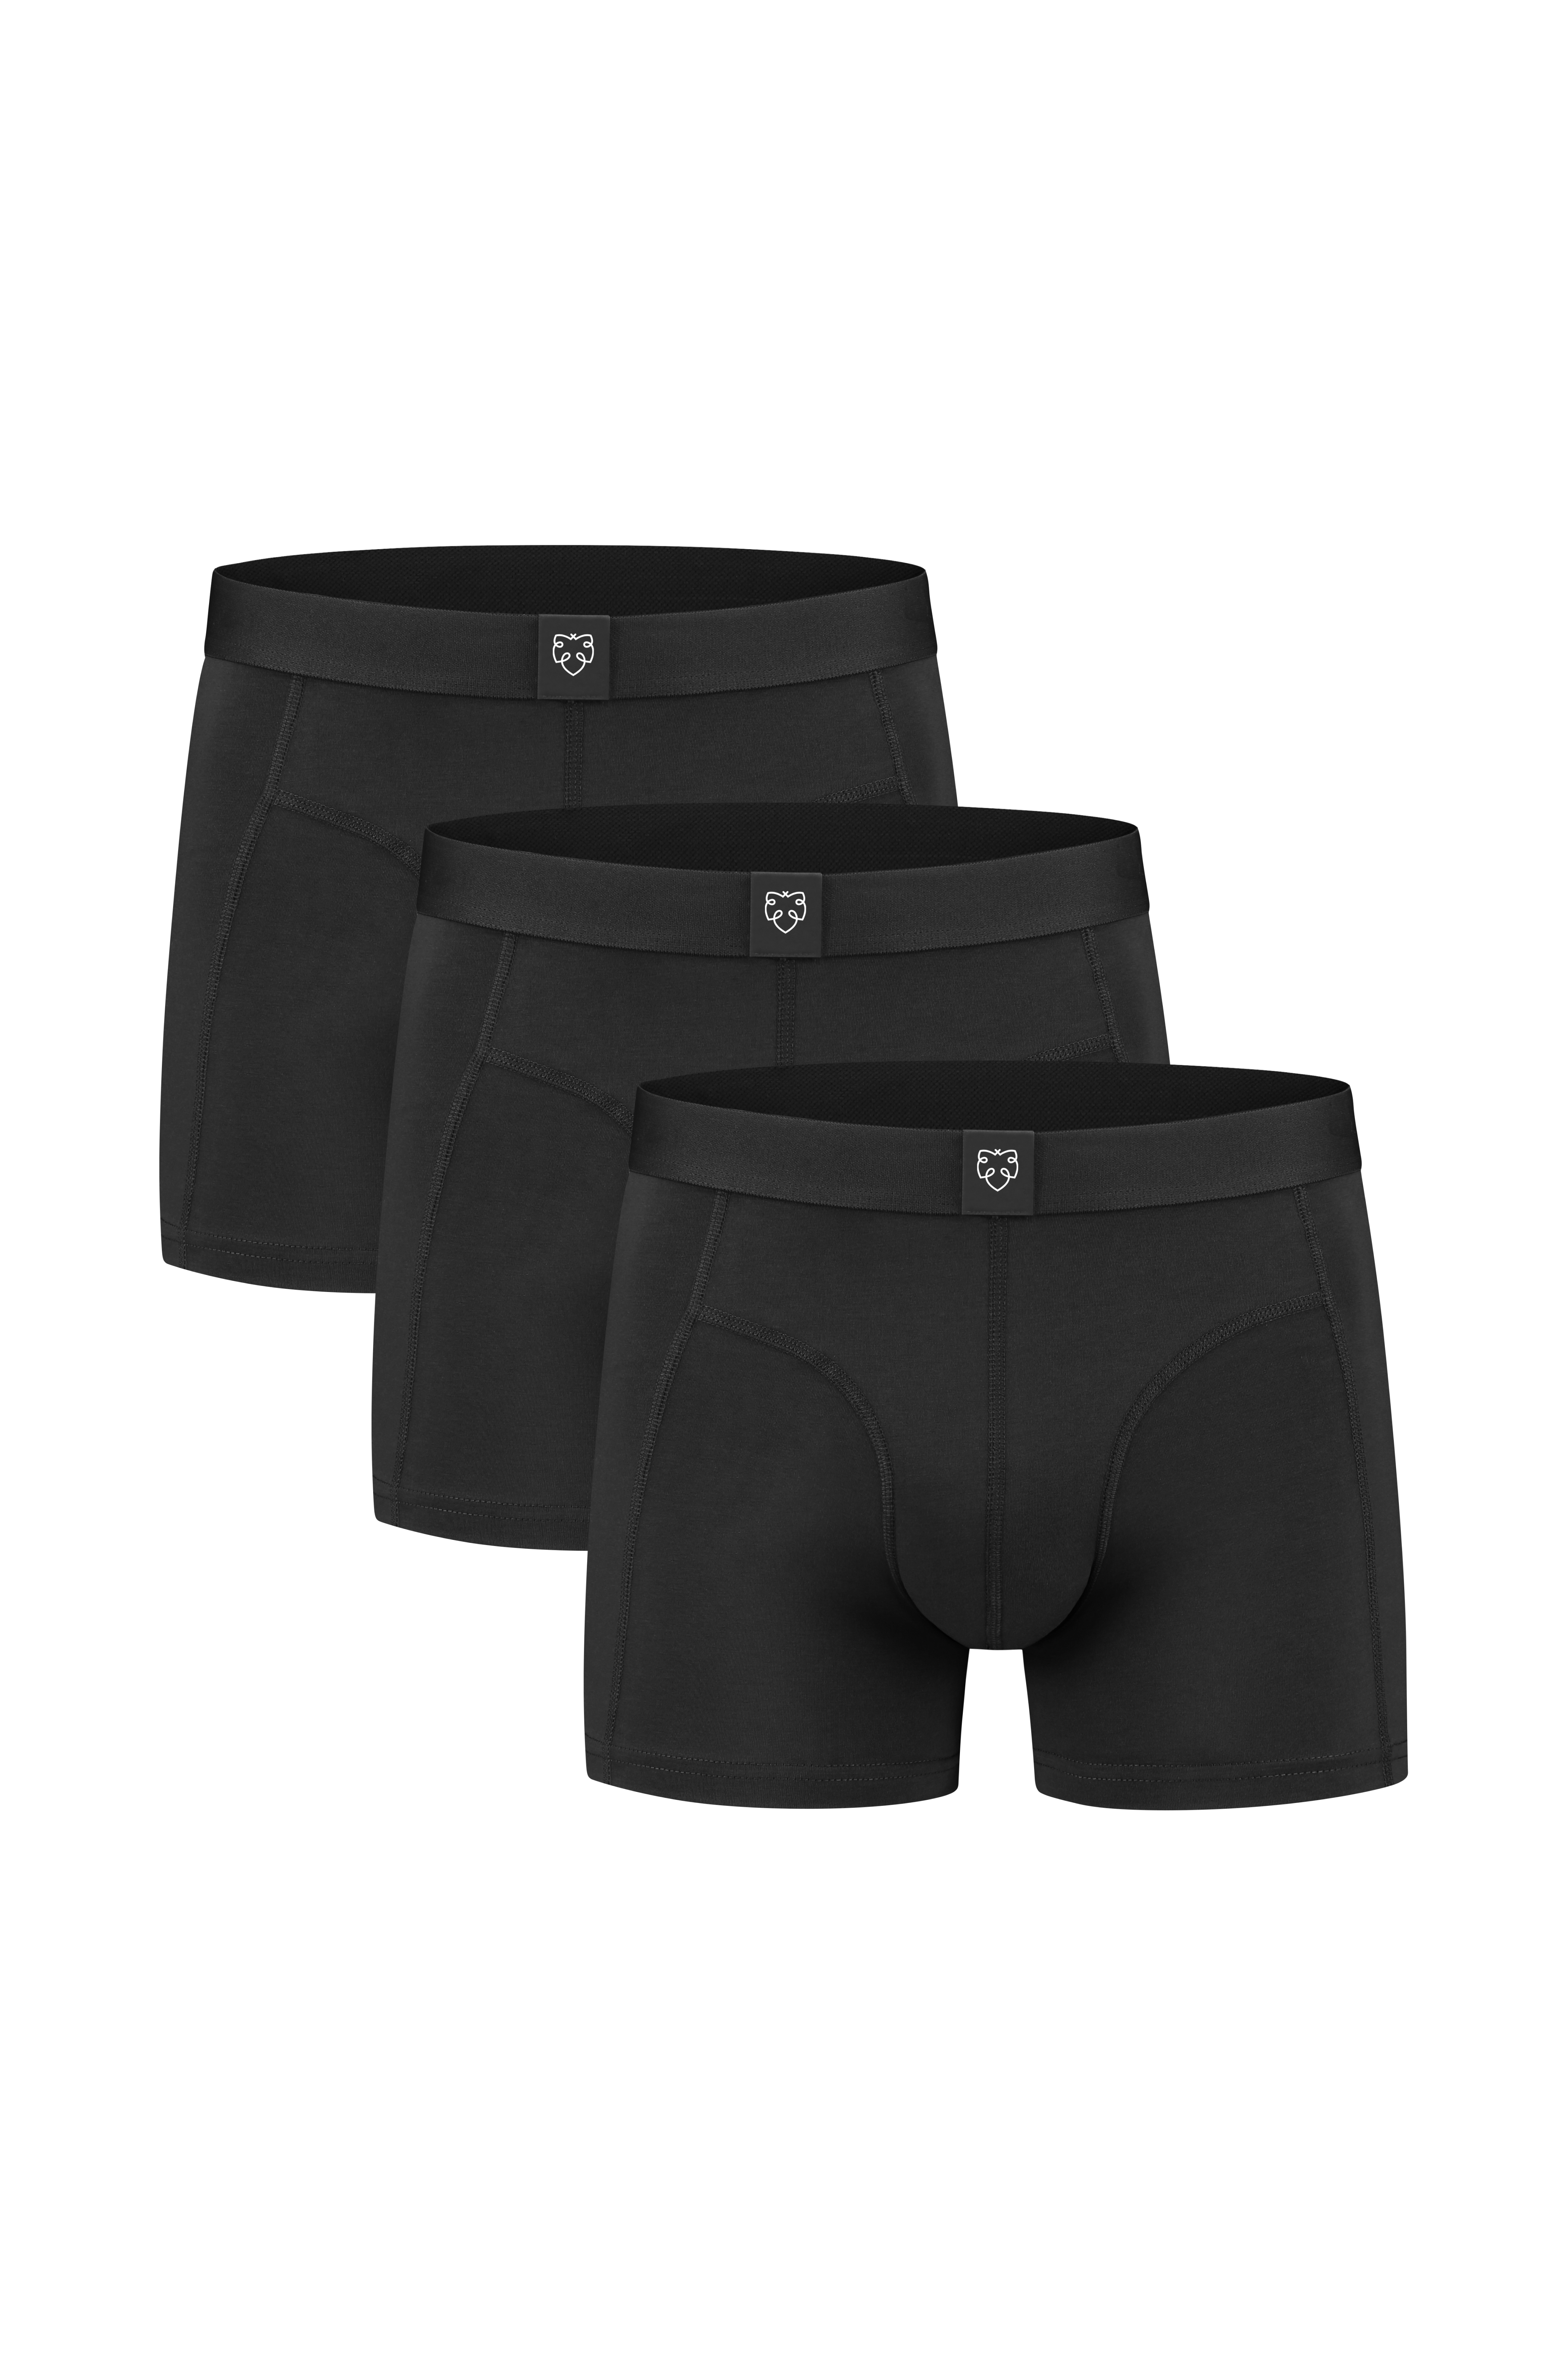 Btoperform Underwear Printed Box Underpants UB-316K SONG OF SWORD-Black